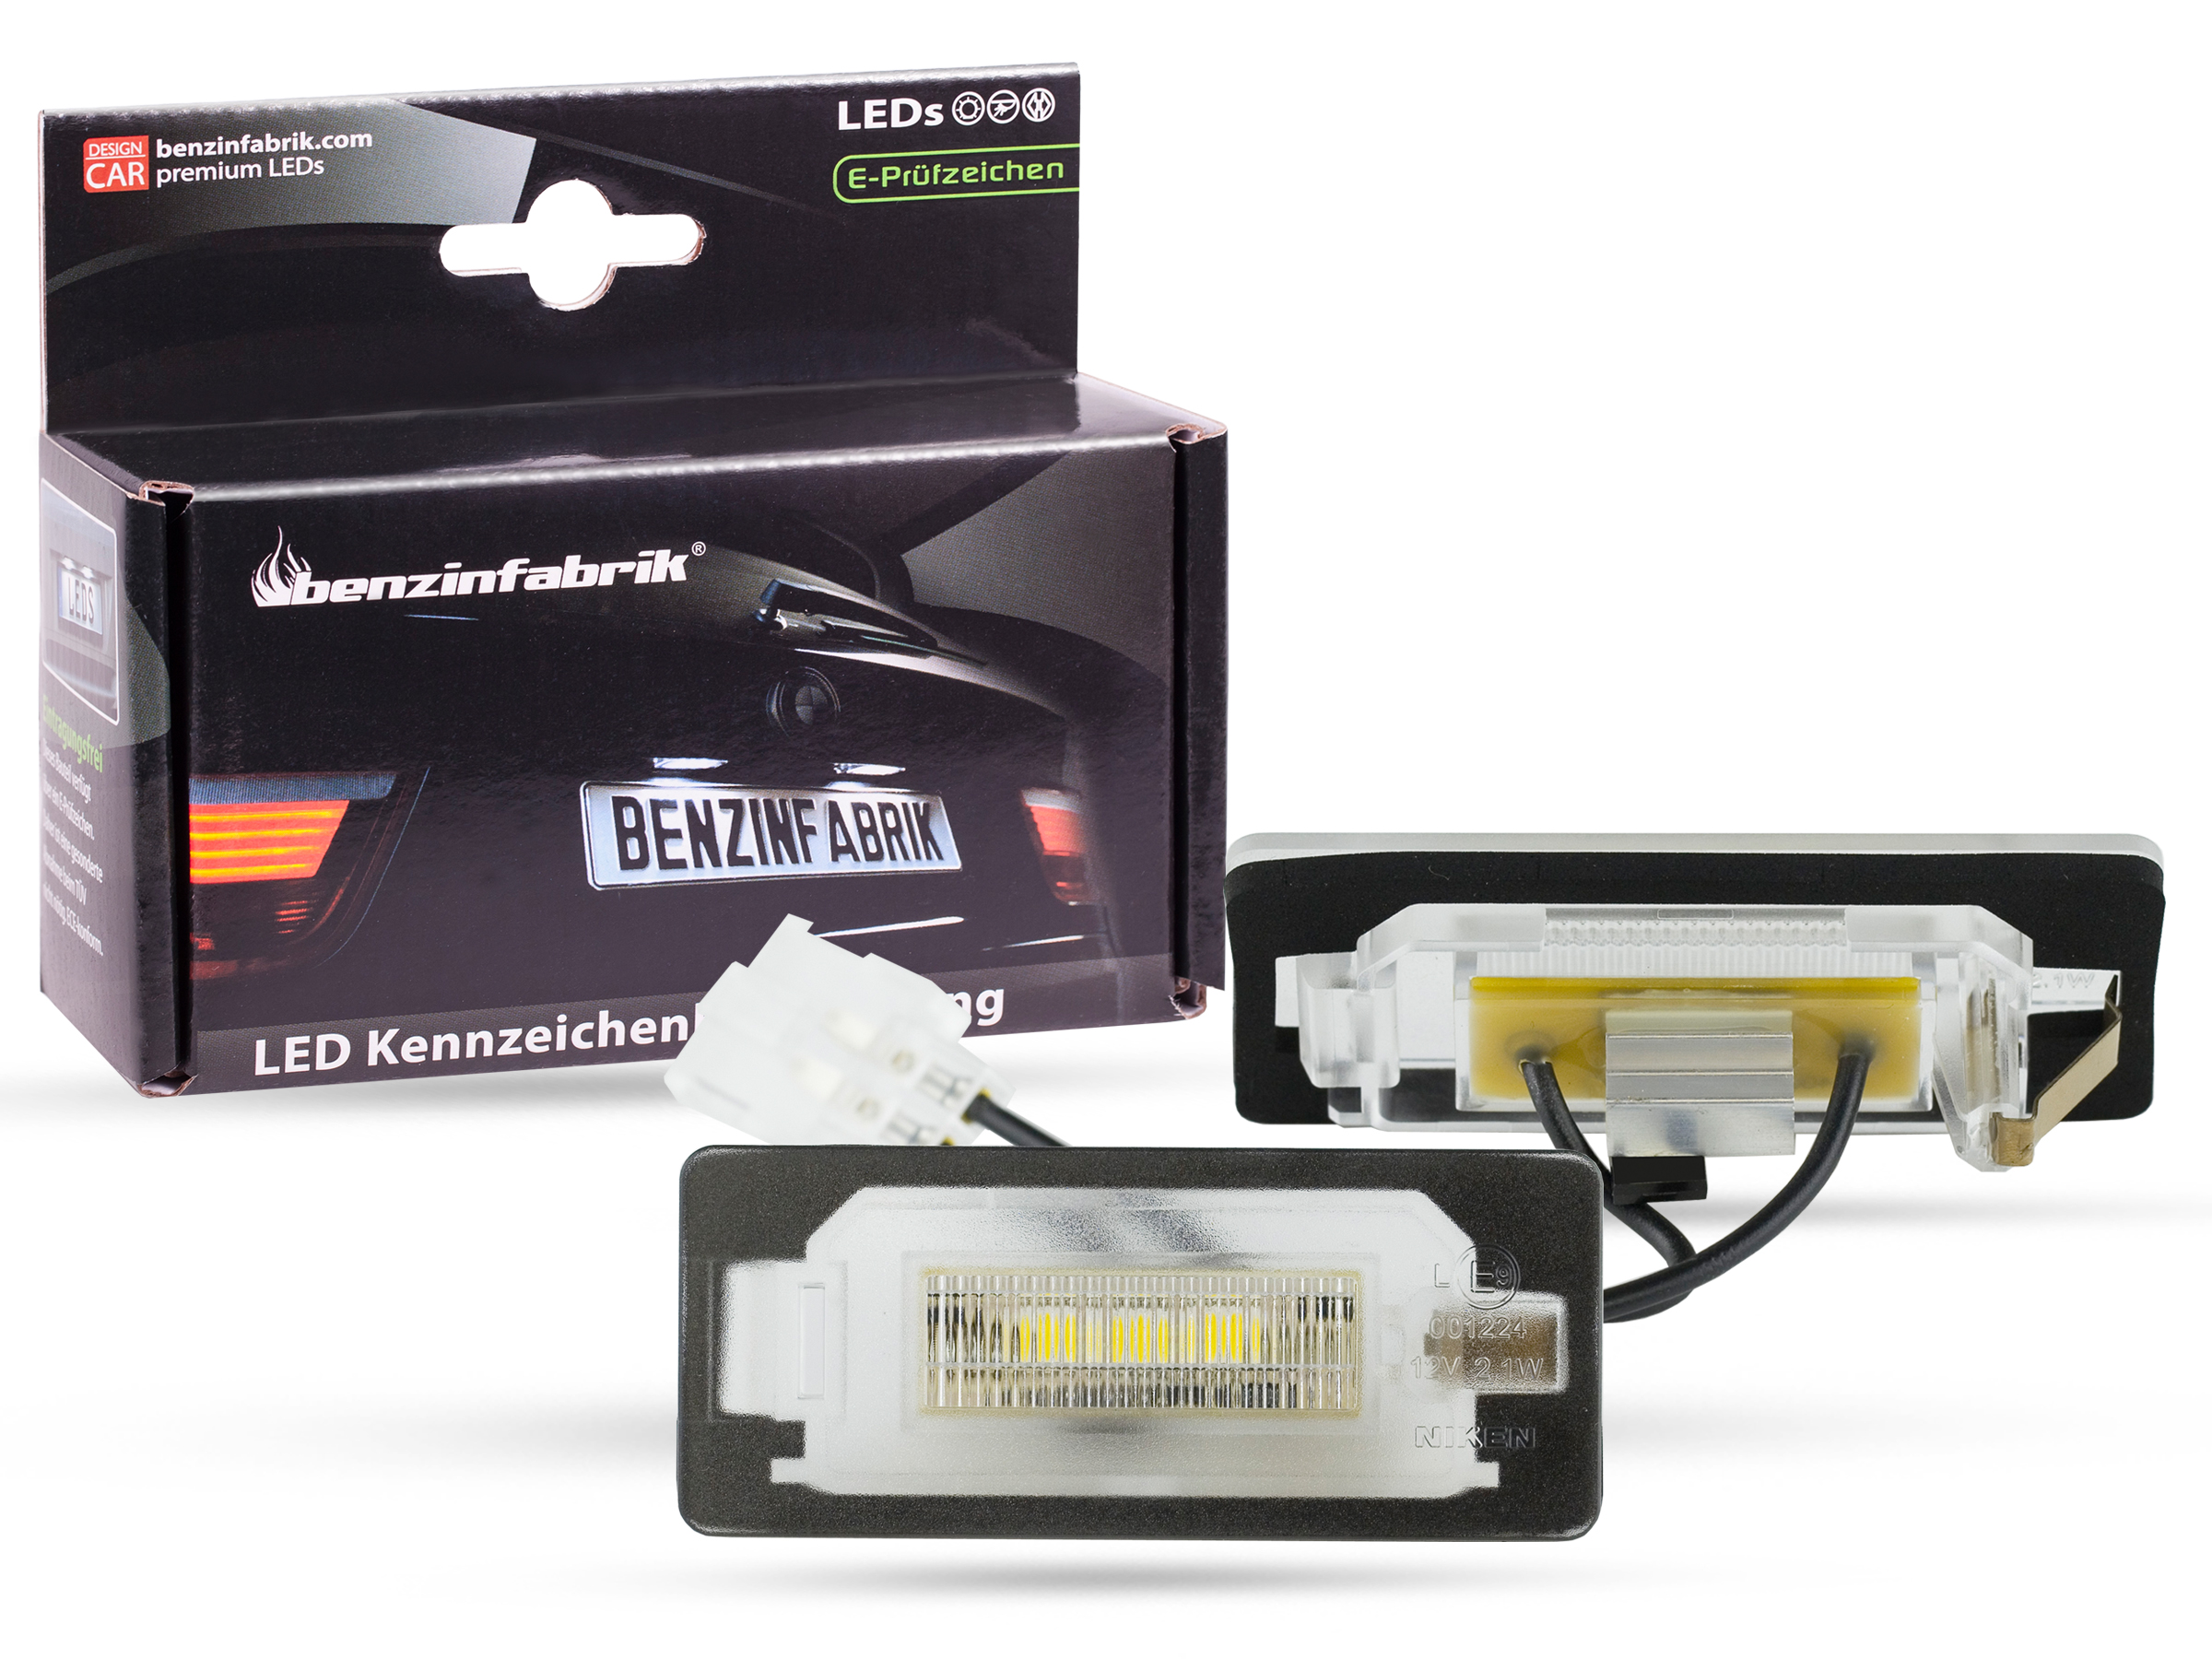 LED Kennzeichenbeleuchtung Module Audi A4 B8 ab Bj. 2010